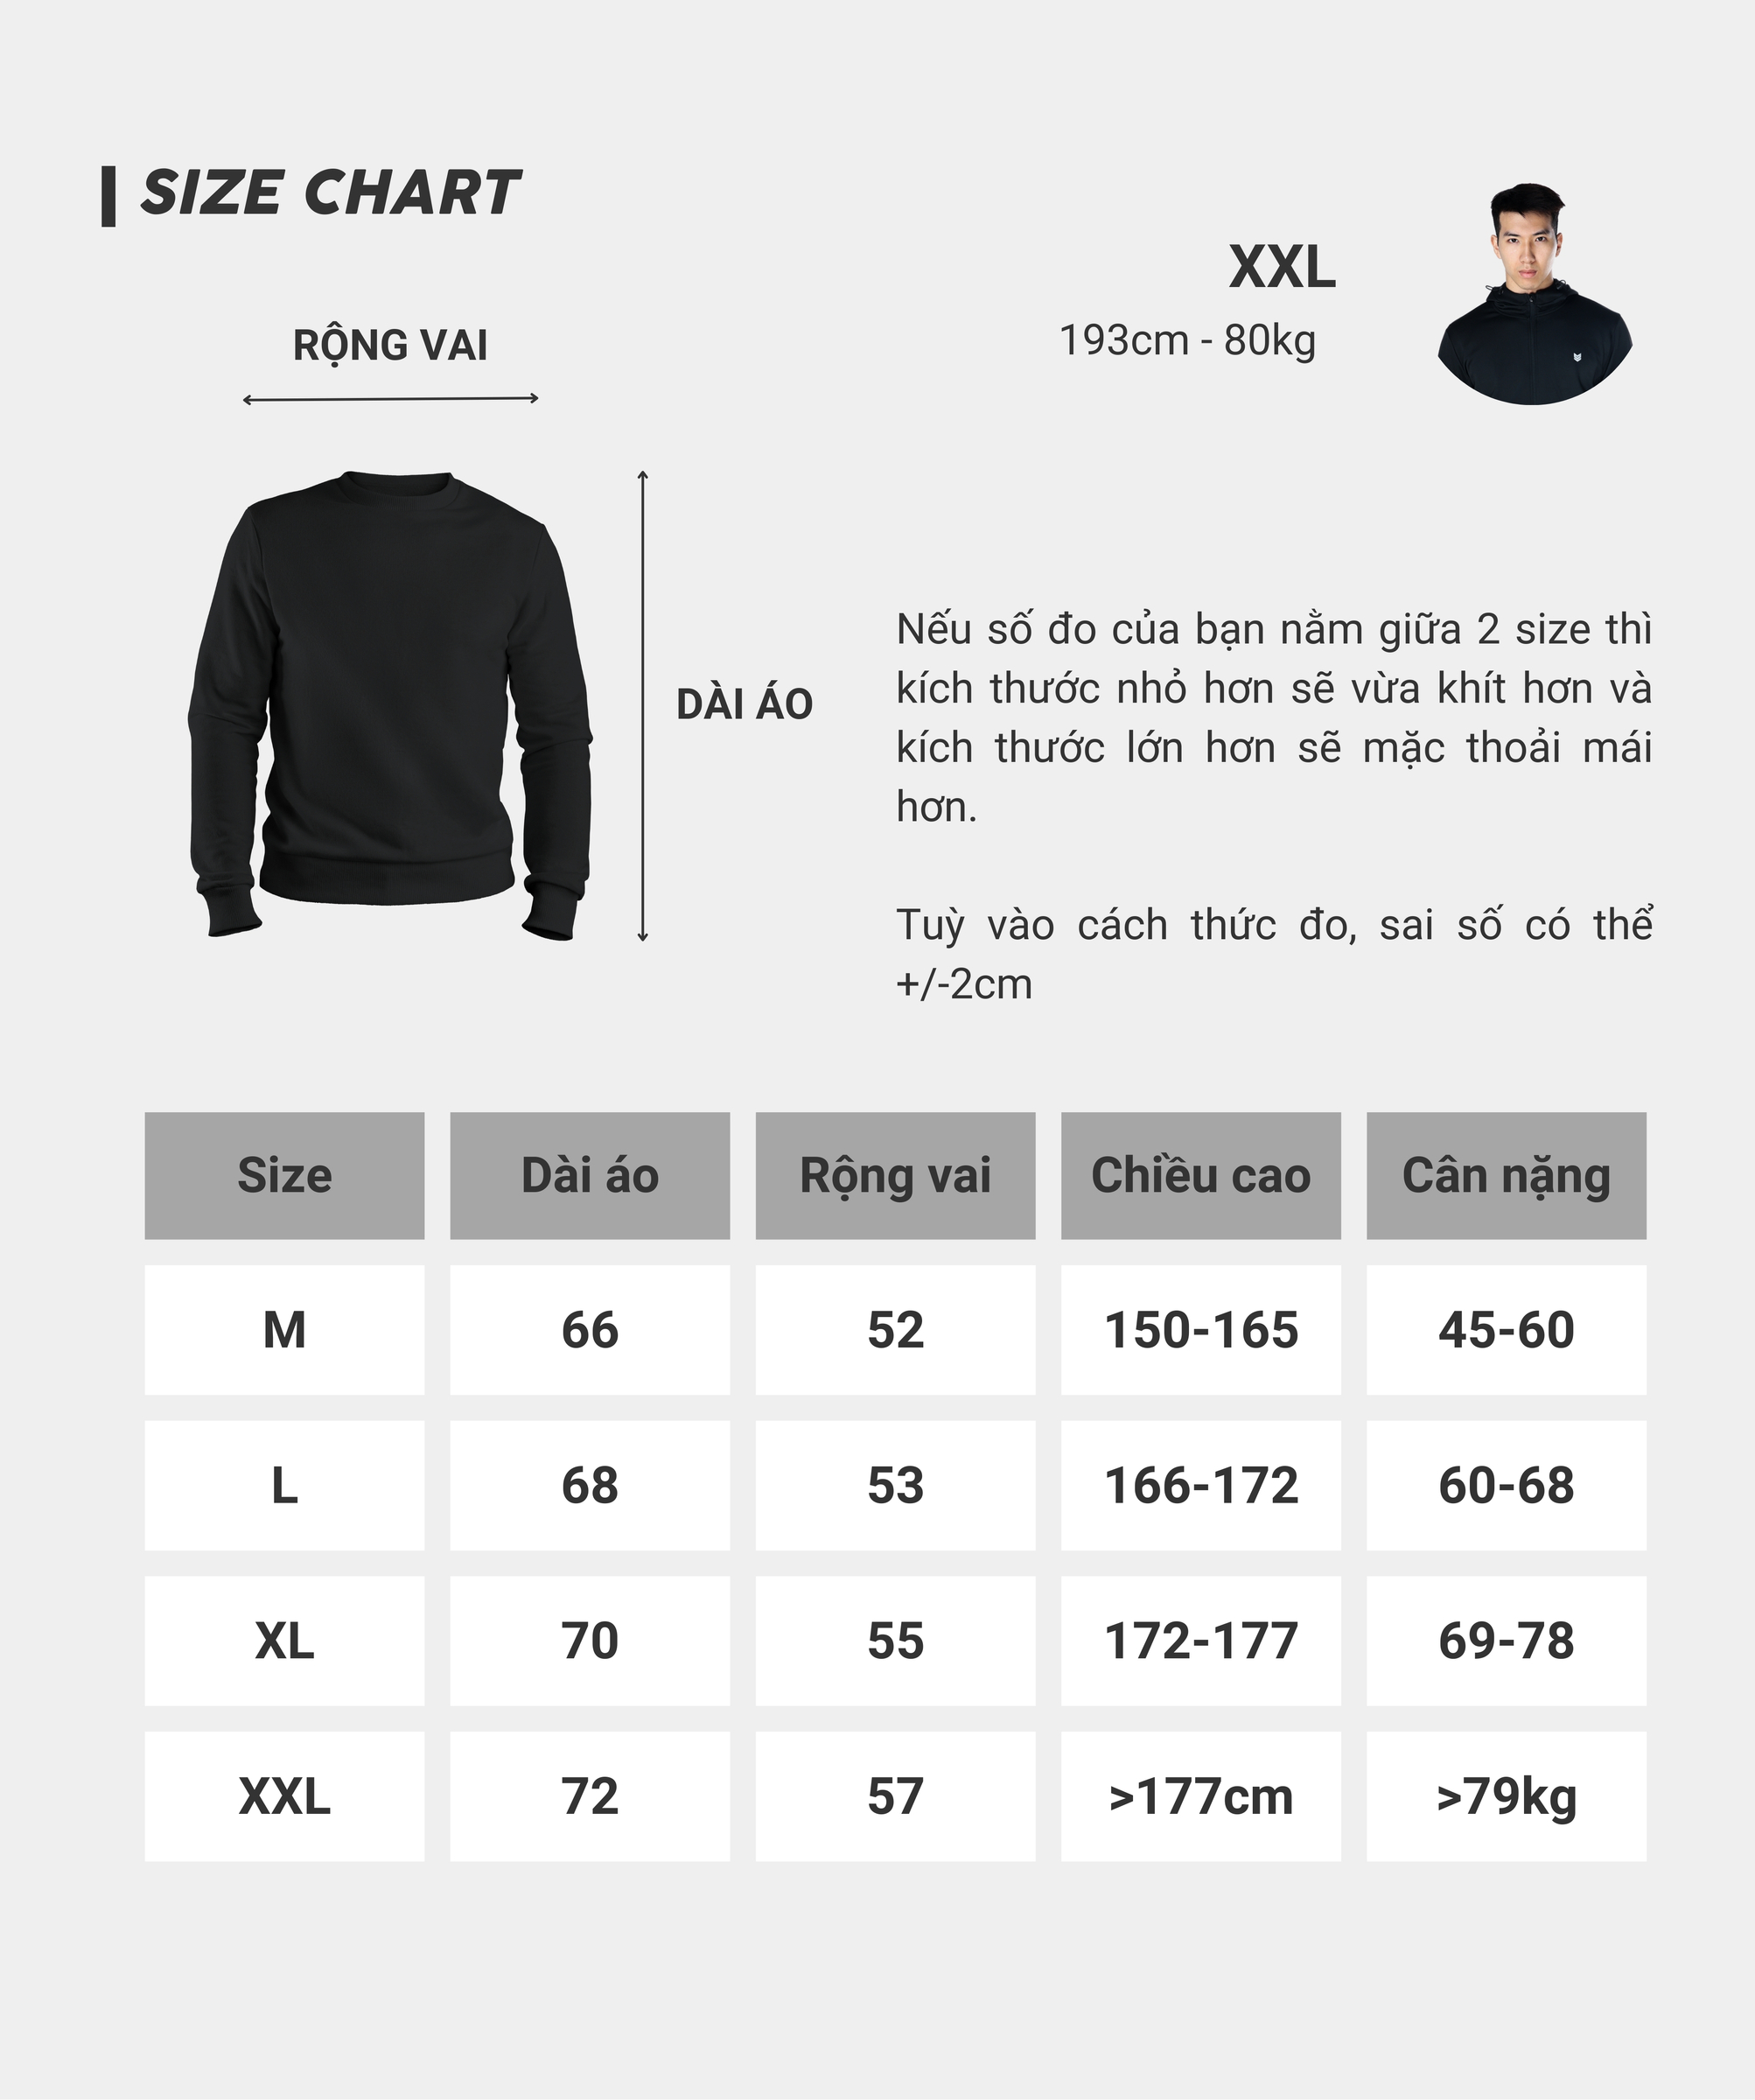 Áo nỉ Redikick Half Zip Sweatshirt - A23015